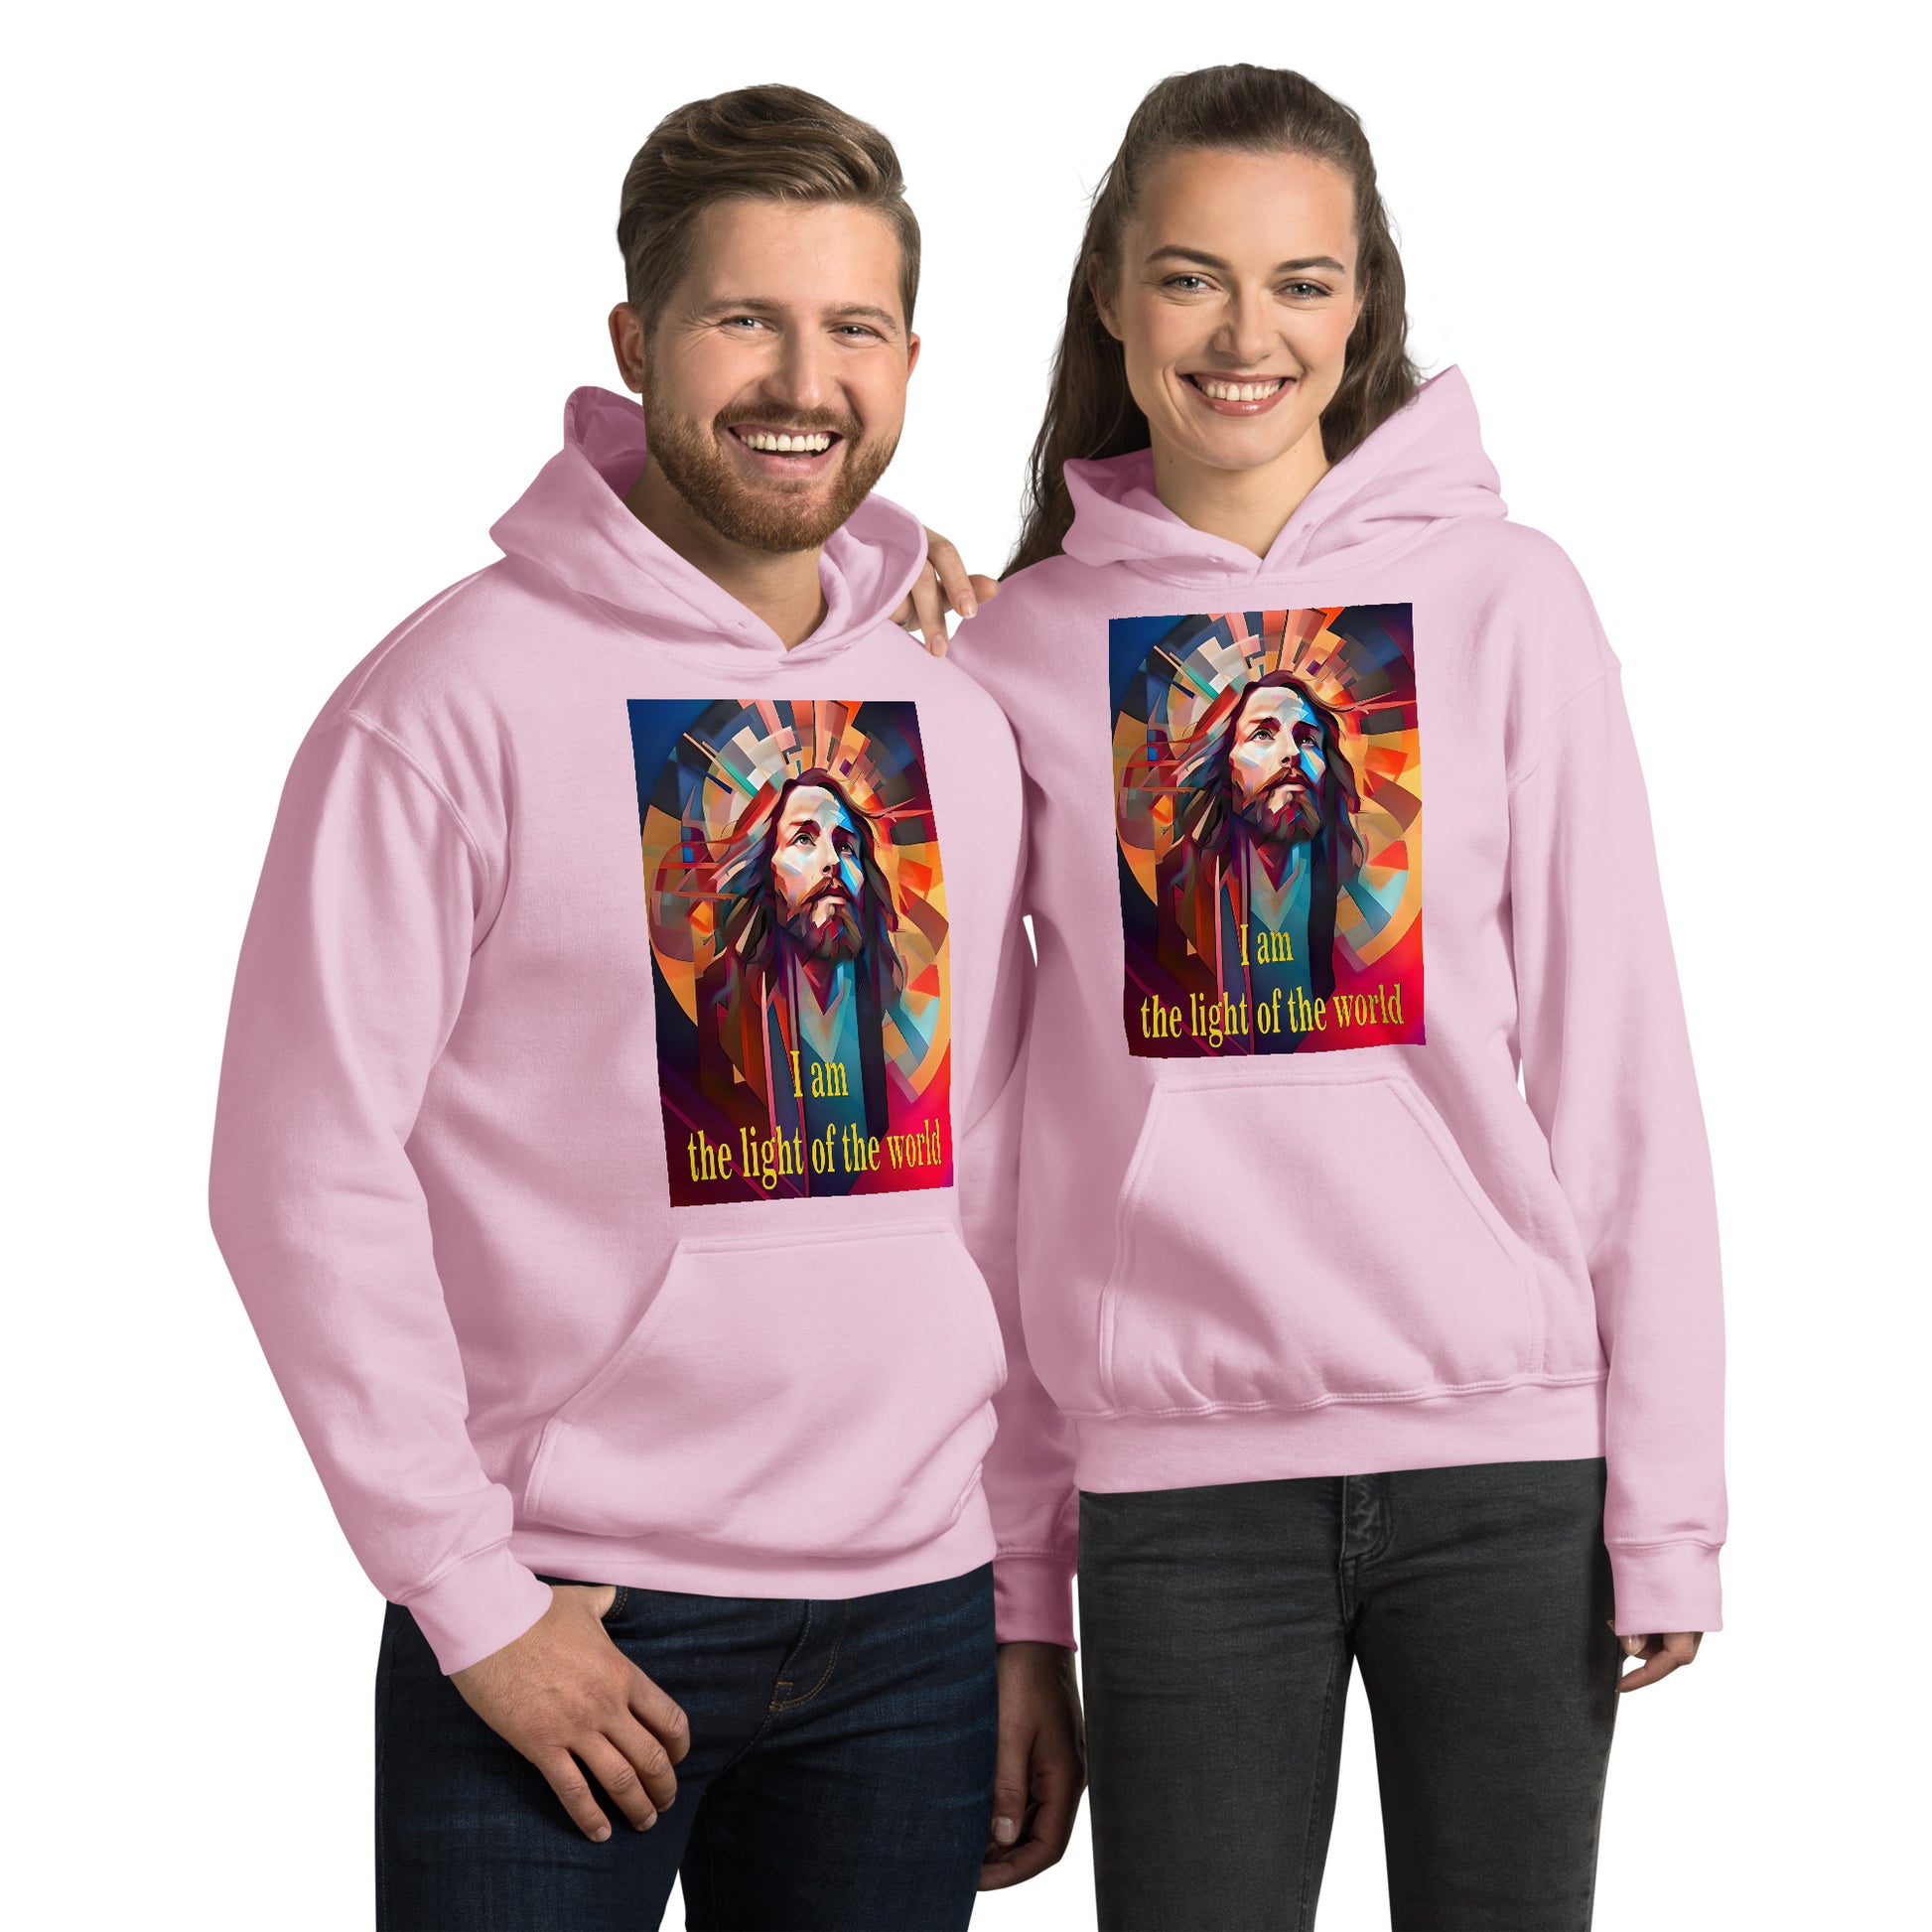 jovenes alegres con sudadera con capucha color rosa con imagen de cristo con mirada arriba